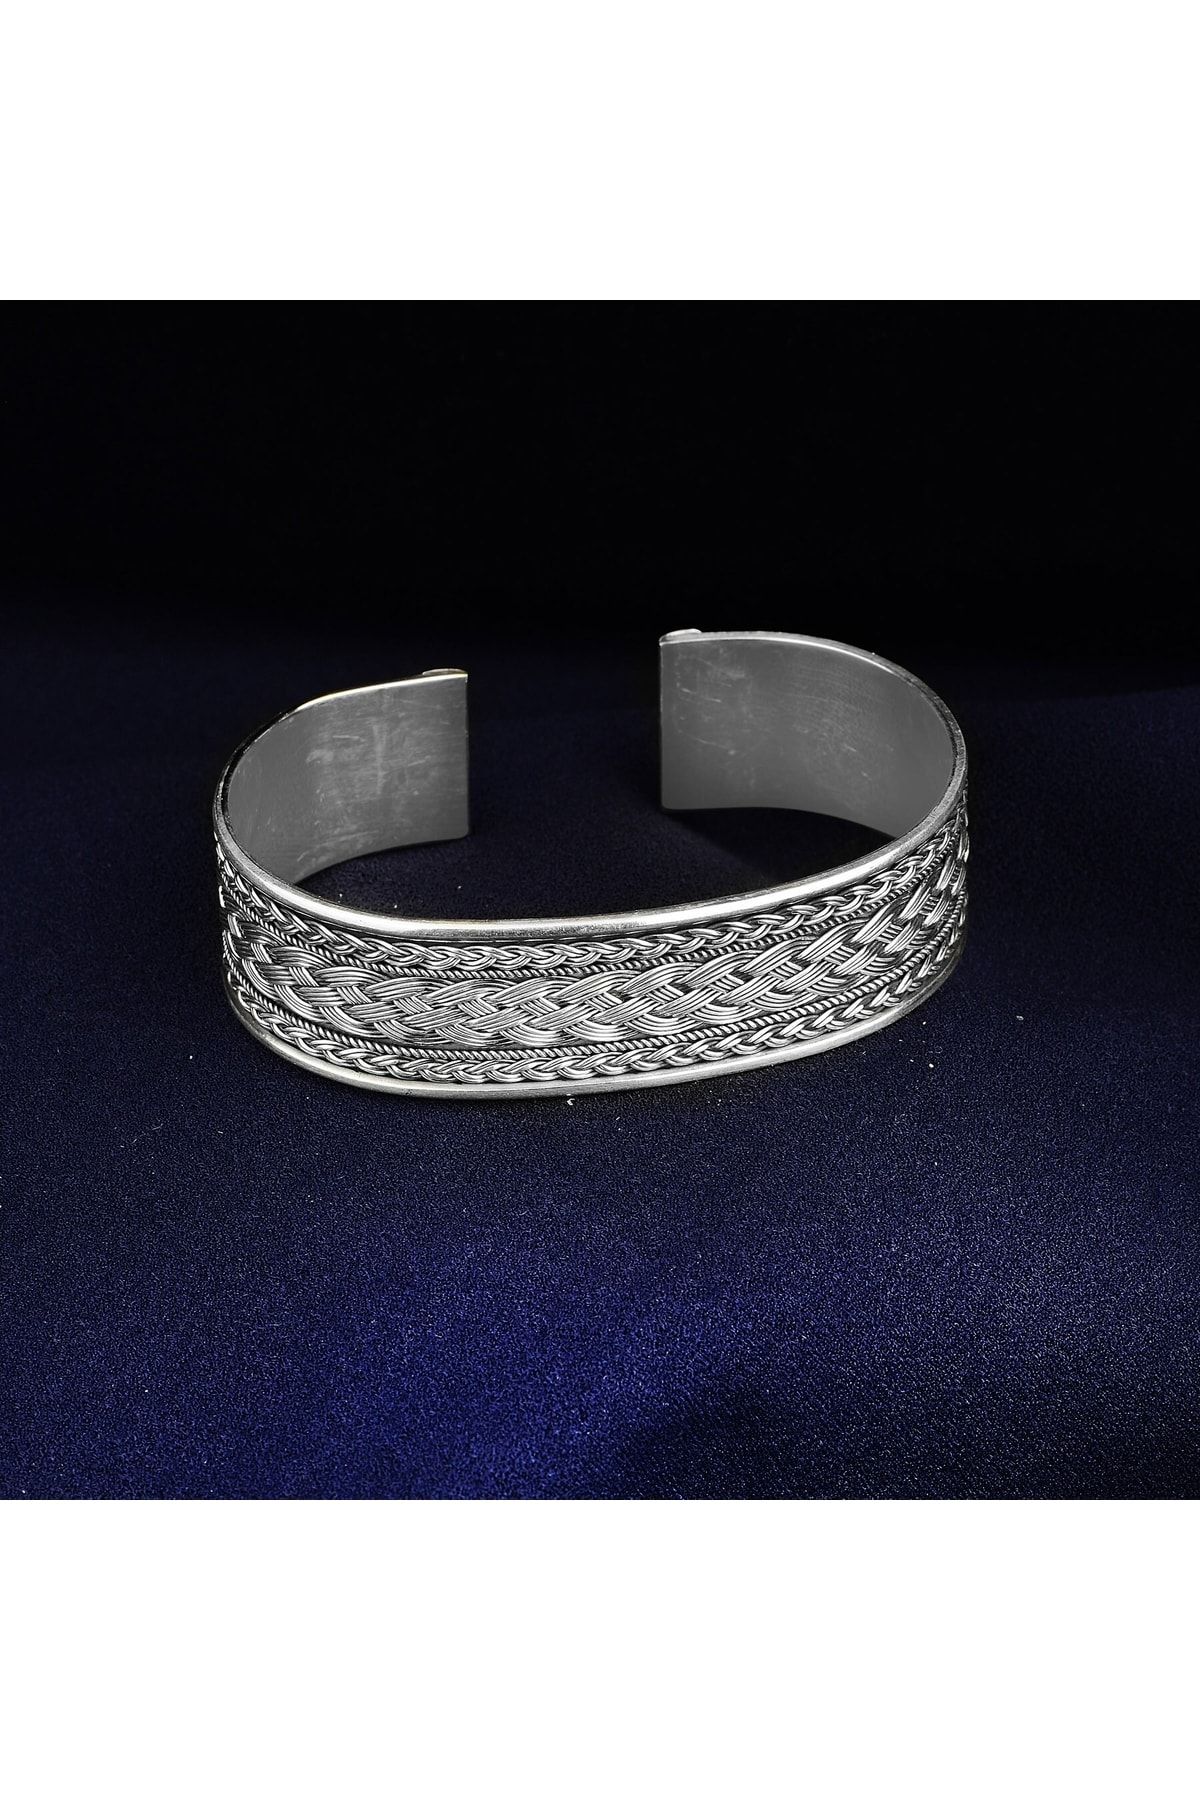 Mercan Silver Gümüş El Yapımı Örgü Modeli Kalın Bilezik